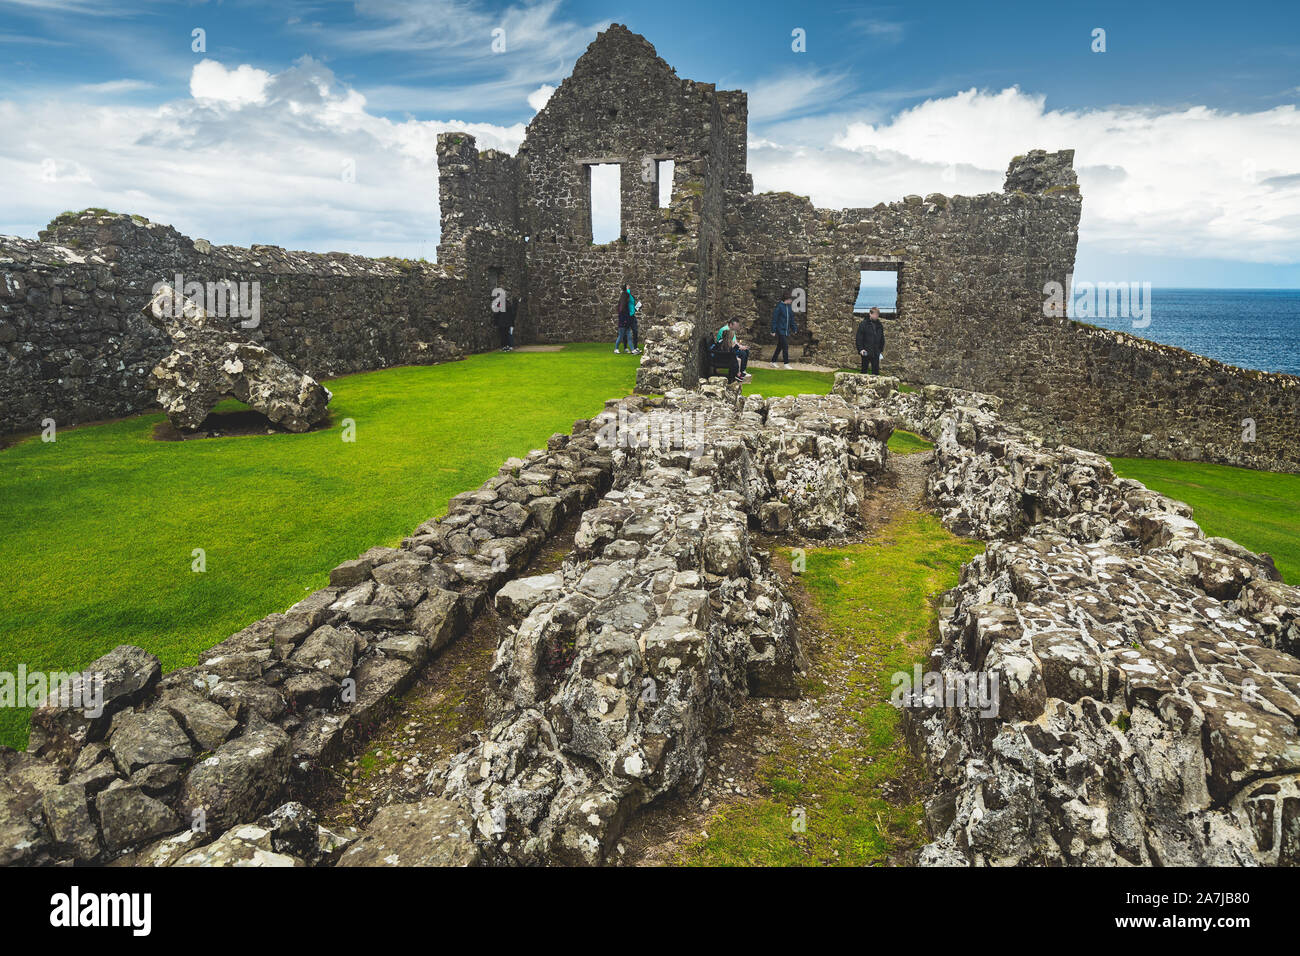 Zerstörten alten Burg an der Küste von Wales. Verfallenen Mauern der mittelalterlichen Gebäude, blauem Himmel mit Wolken und Meer im Hintergrund. Touristen, die erstaunliche Landschaft mit Bleiben der antiken Haus an der Küste Stockfoto